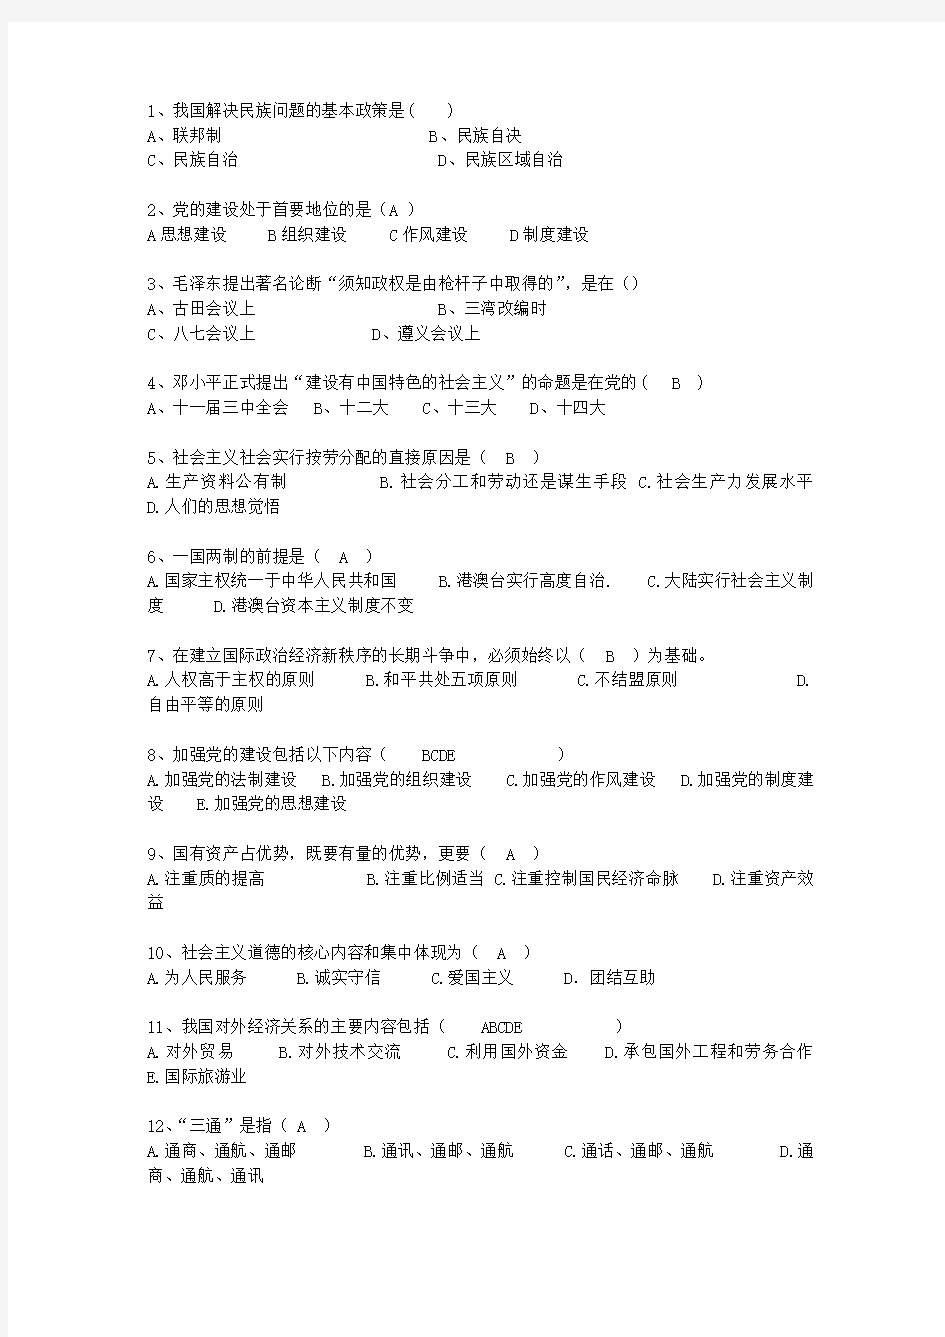 2011贵州省毛概考试重点新总结A最新考试试题库(完整版)